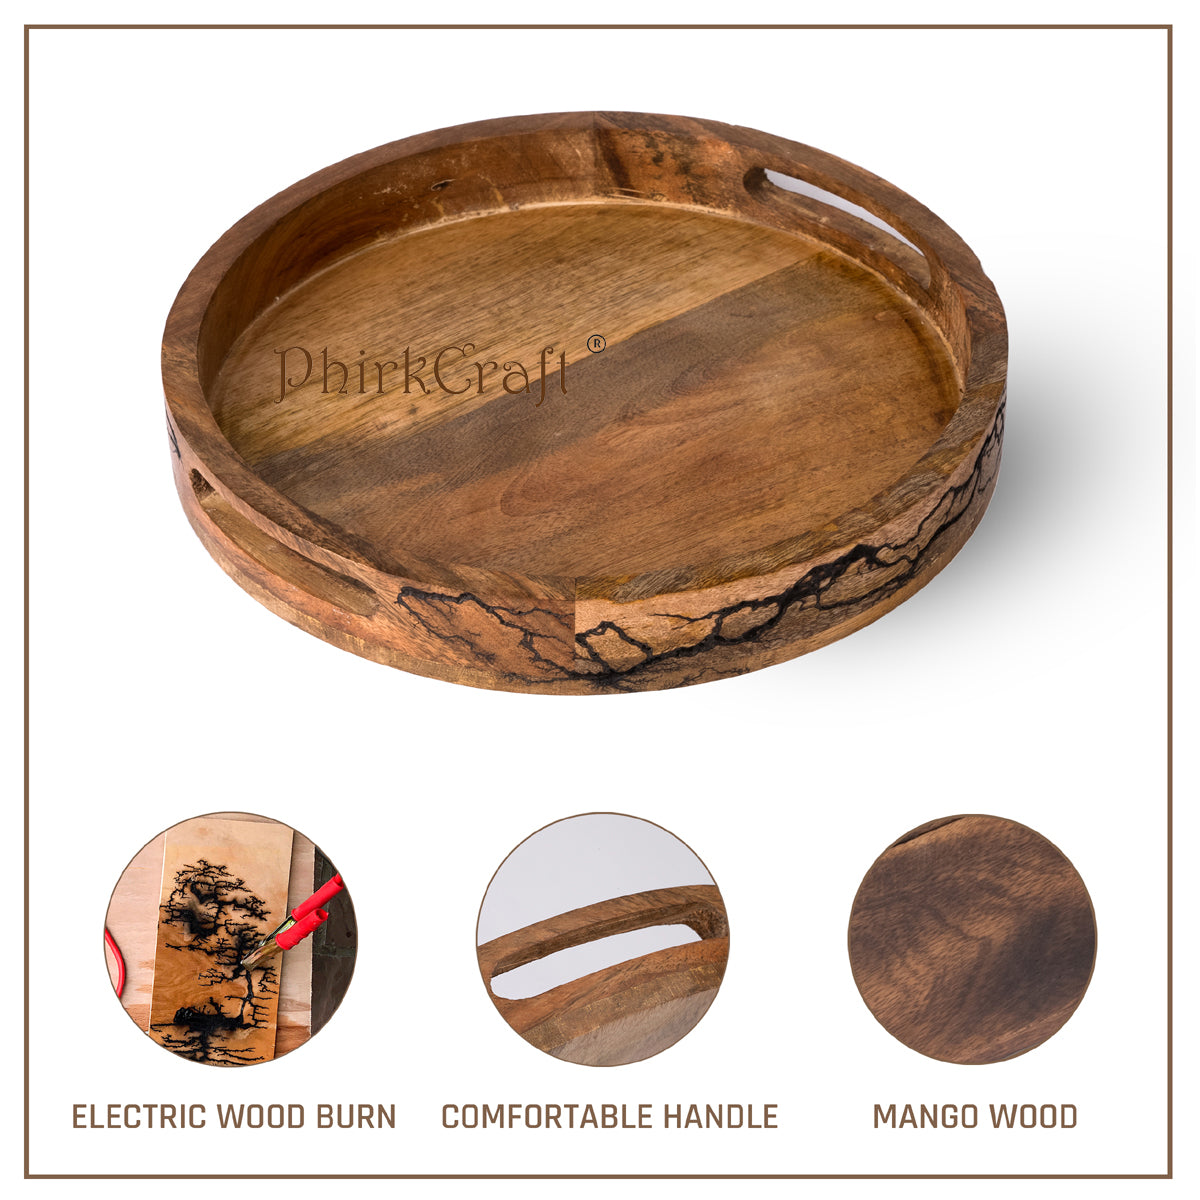 Phirkcraft Oval Serving Wooden Platter with Crackle Design for Serving Beverages & Food on Bar Living Room/ Home Dining Table